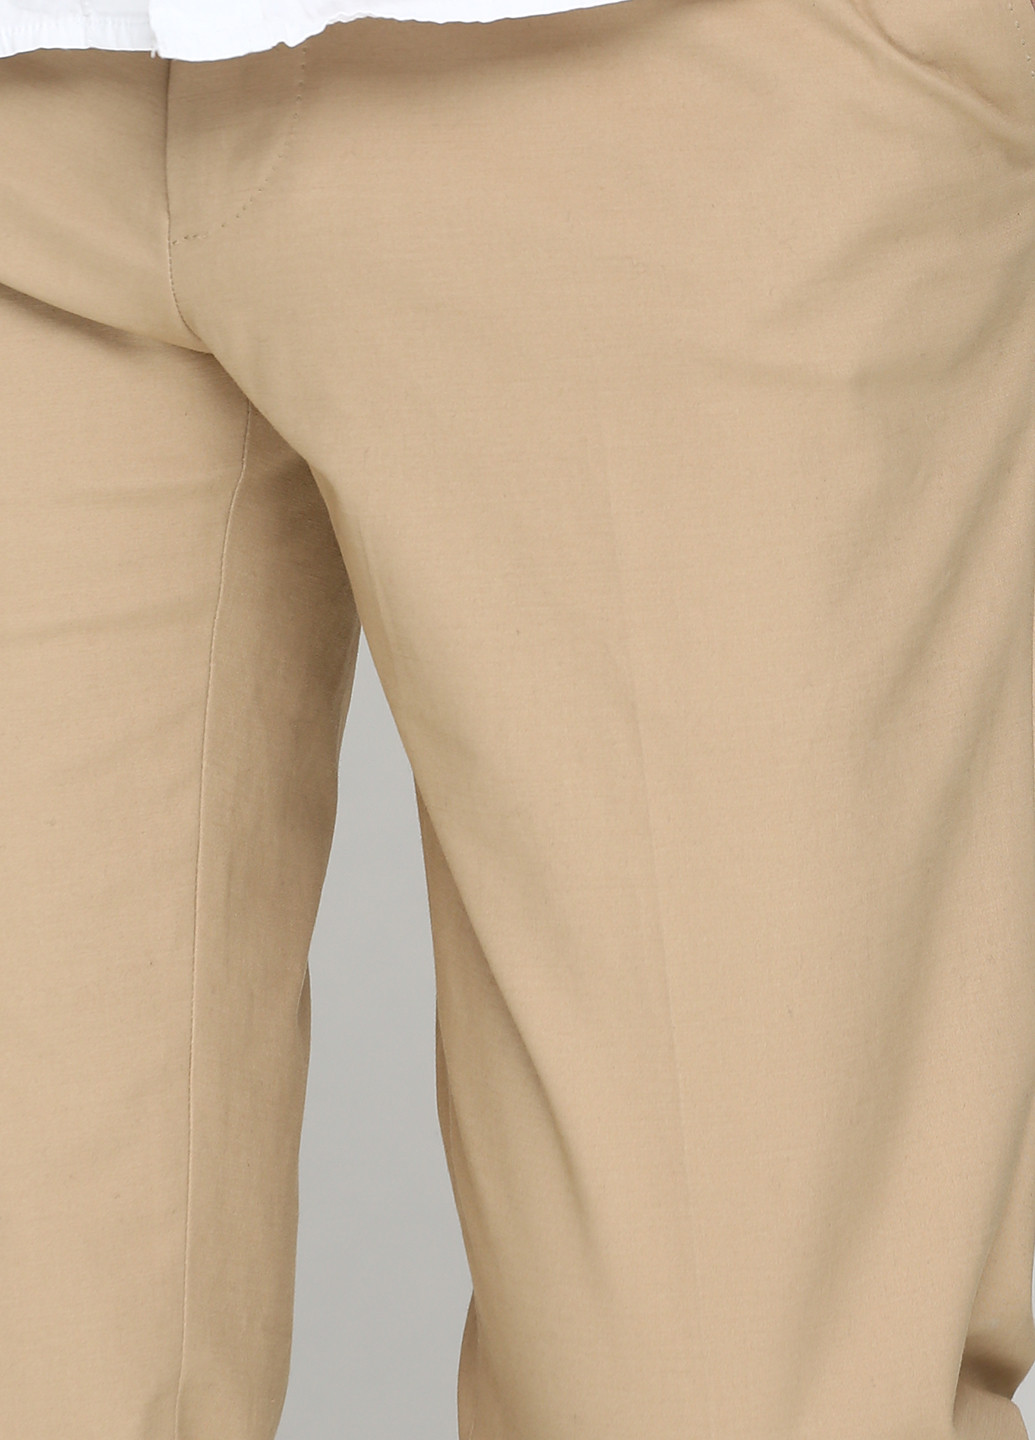 Песочные демисезонные брюки Ralph Lauren